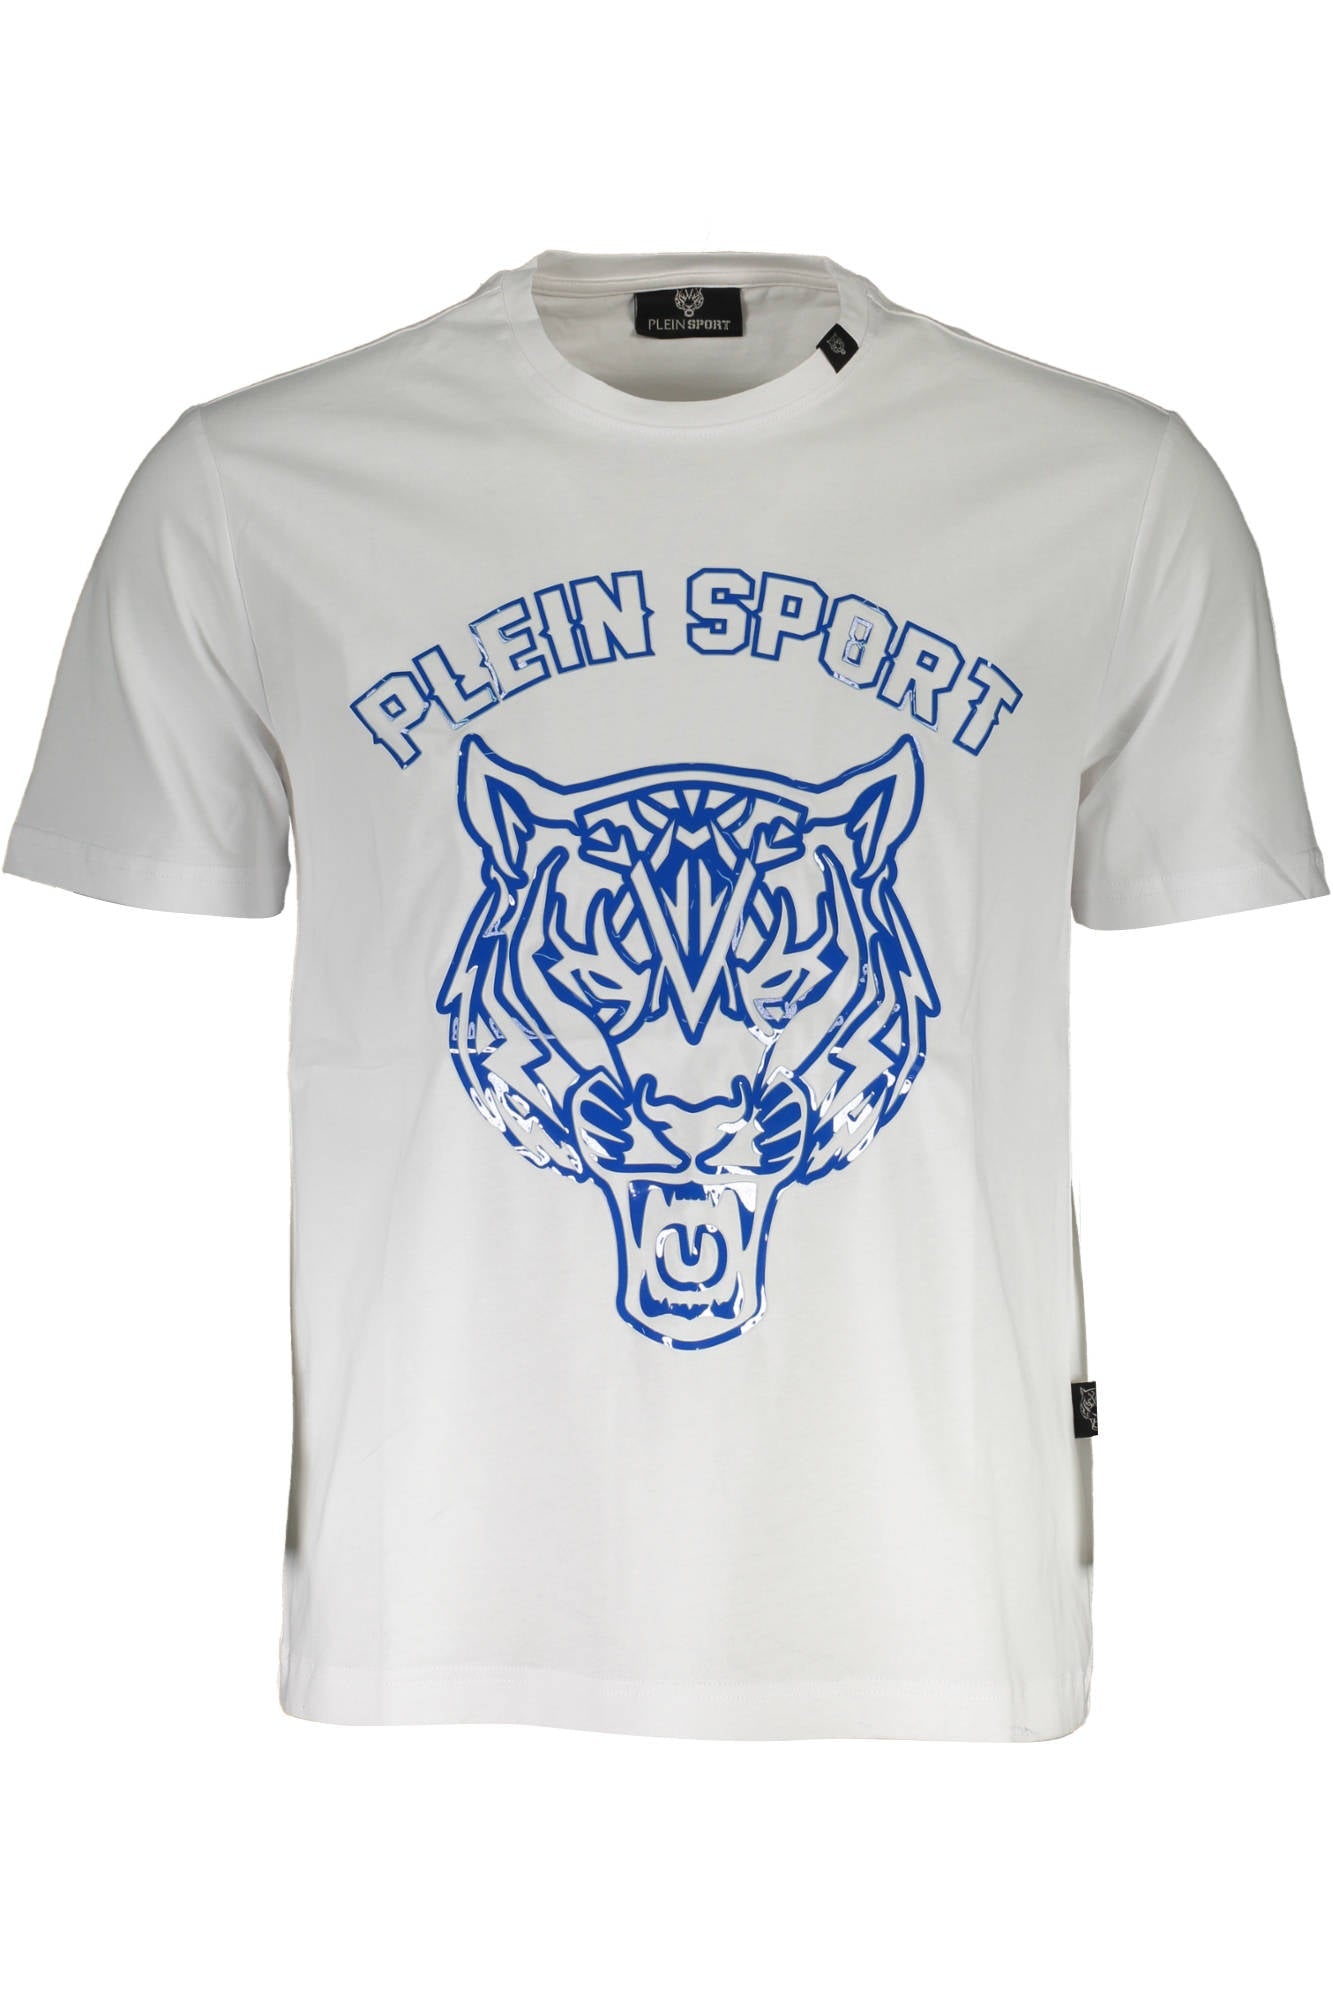 Plein Sport White T-Shirt - Fizigo